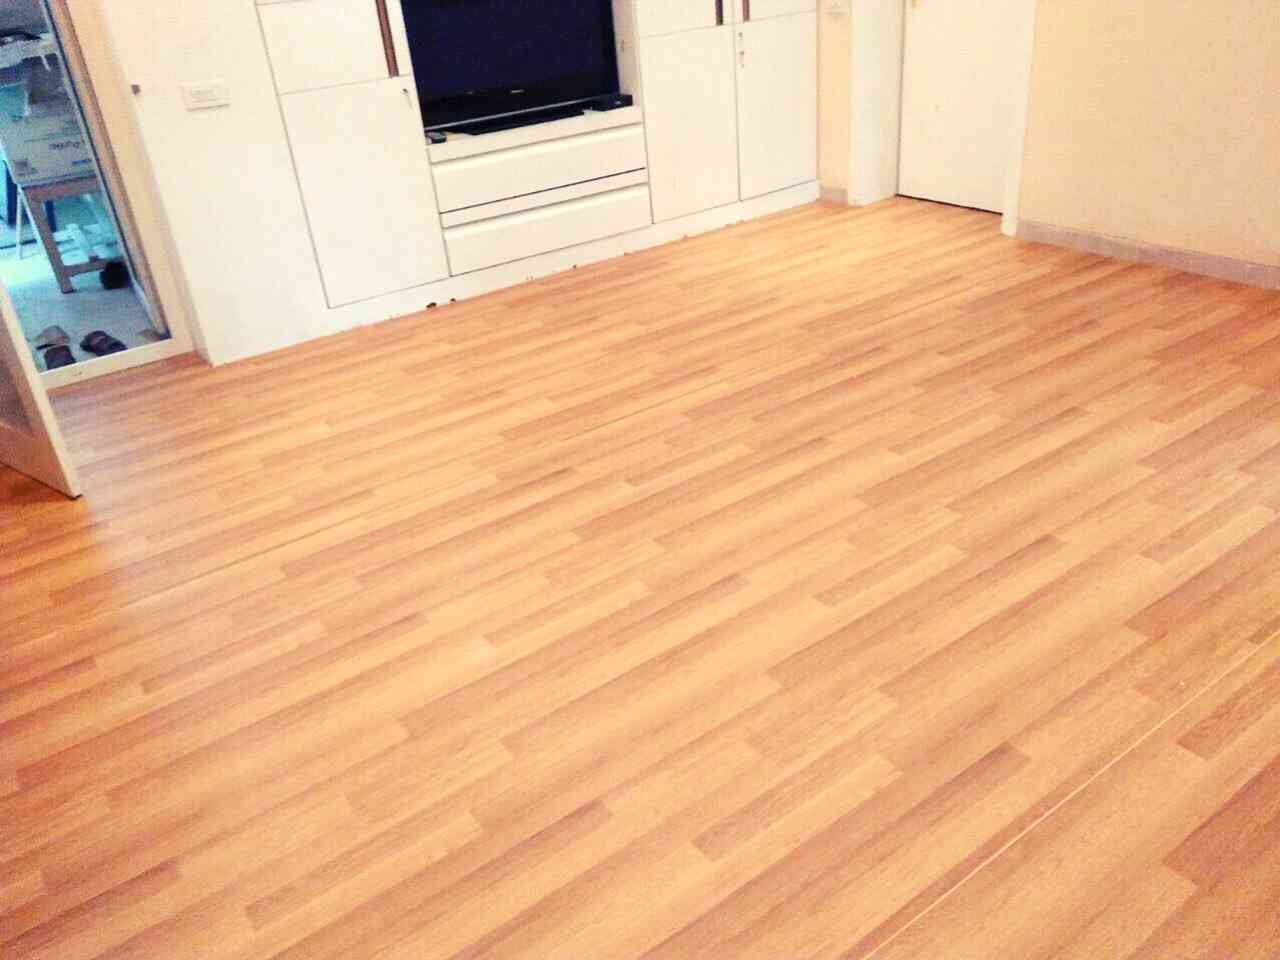 Wooden flooring New Delhi, Farm House flooring, residental flooring, wooden flooring  